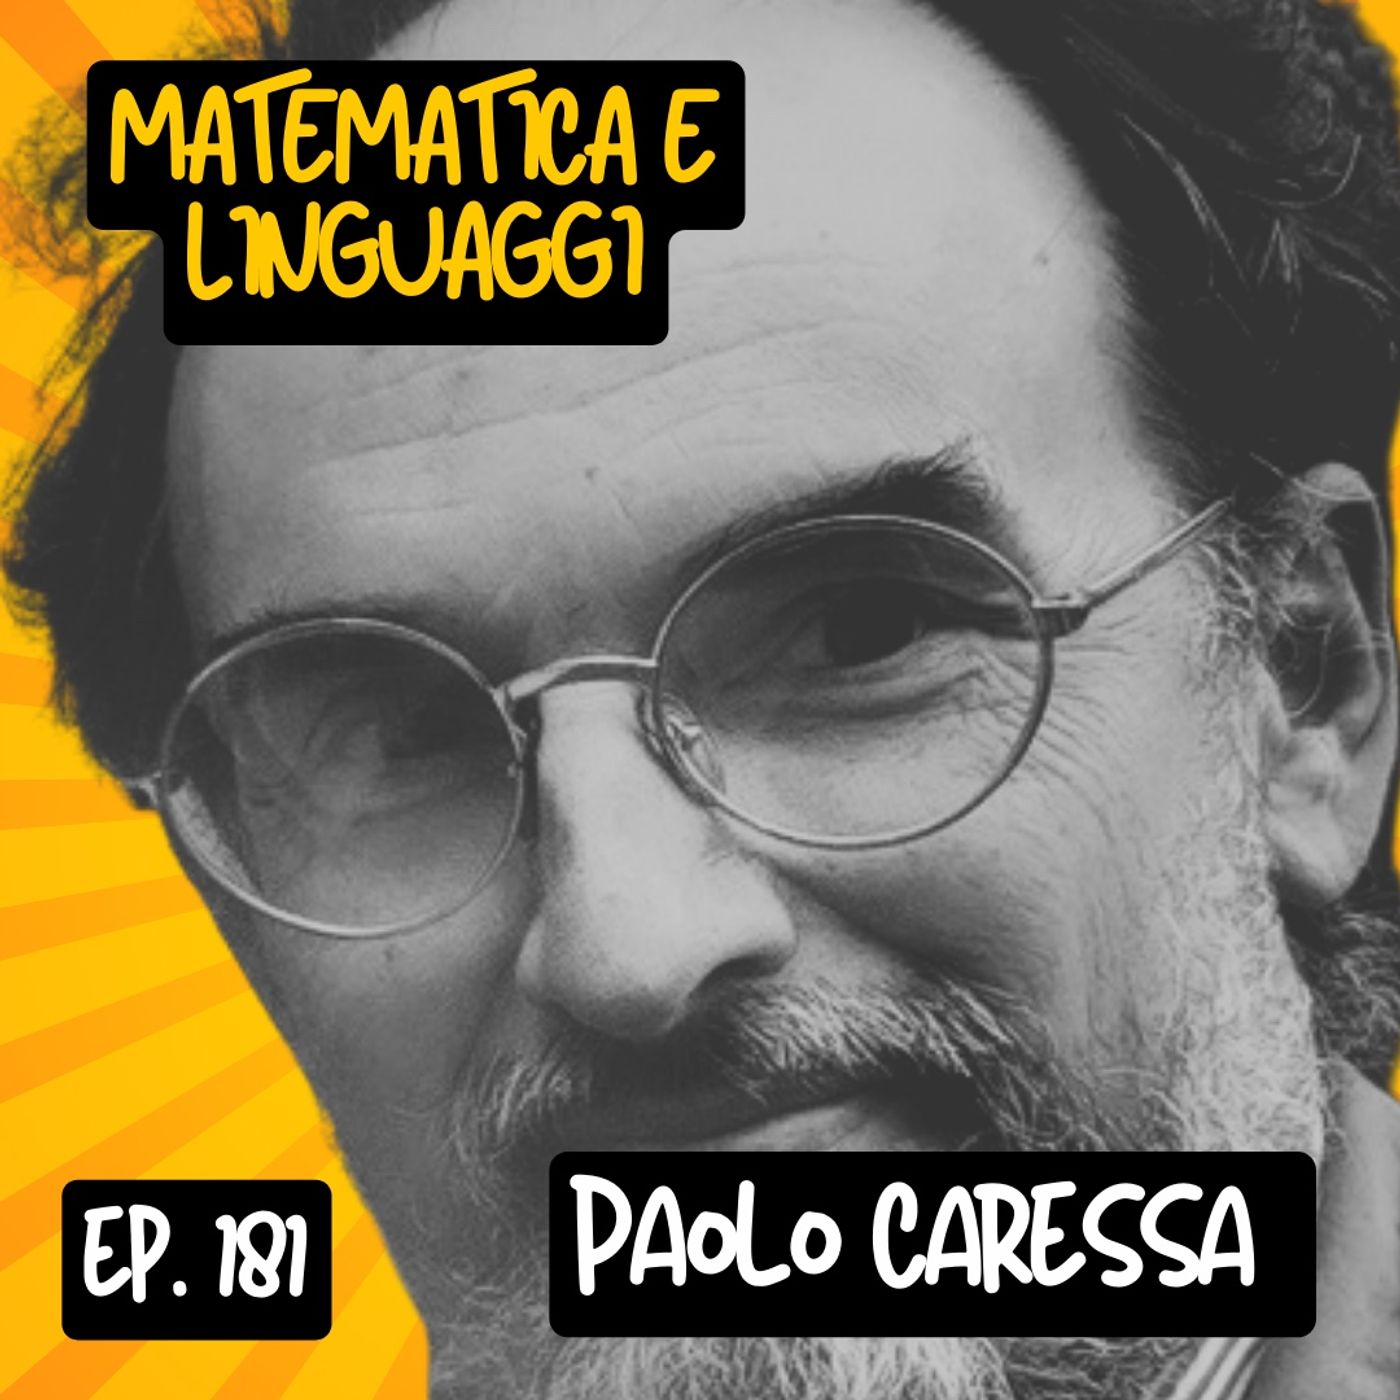 Ep.181 - Matematica e linguaggi con Paolo Caressa